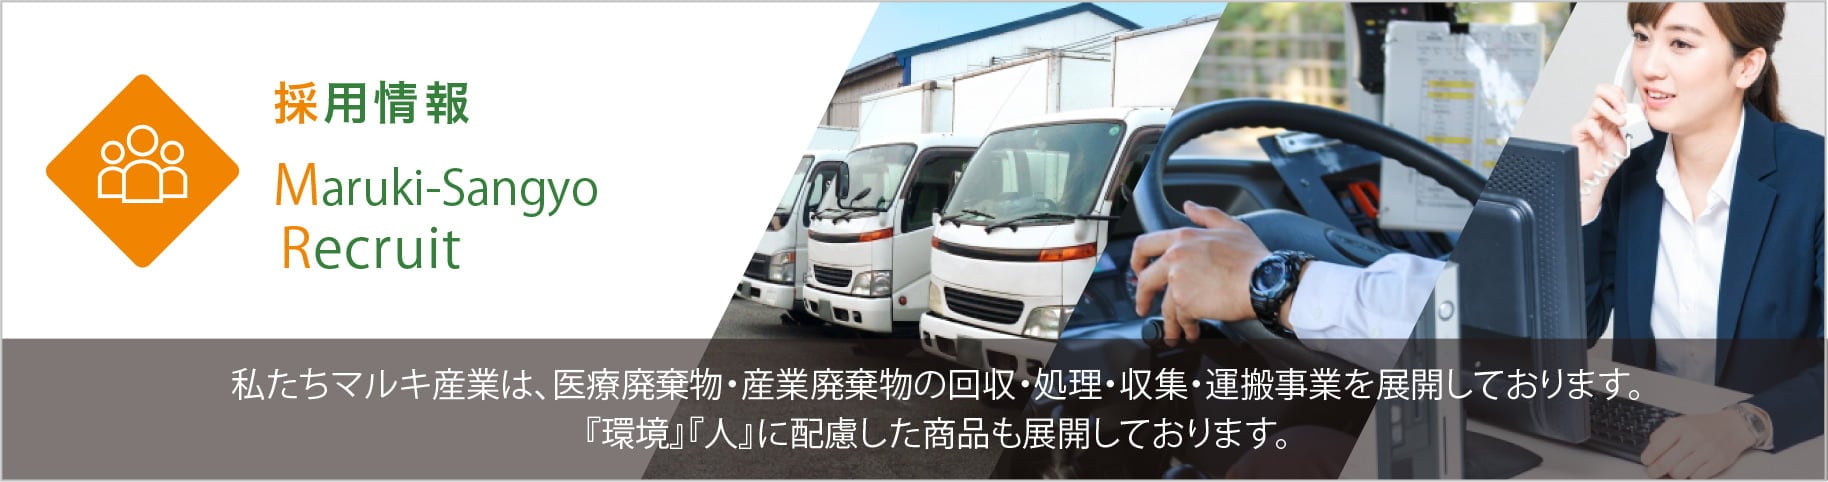 採用情報 Maruki-Sangyo Recruit 私たちマルキ産業は、医療廃棄物・作業廃棄物の回収・処理・収集・運搬事業を展開しております。 『環境』『人』に配慮した商品も展開しております。